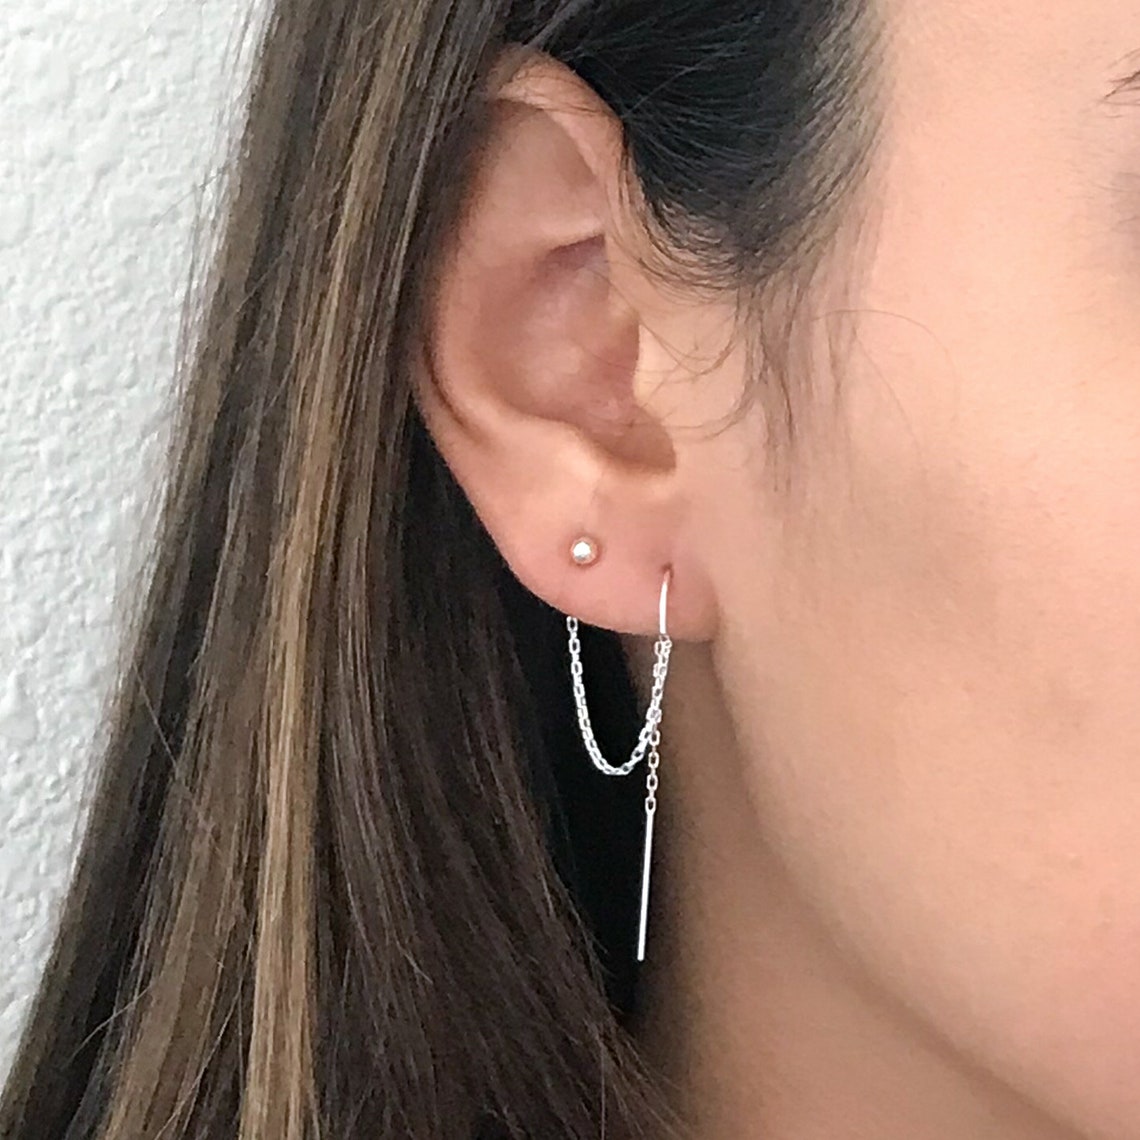 Double Piercing Earrings